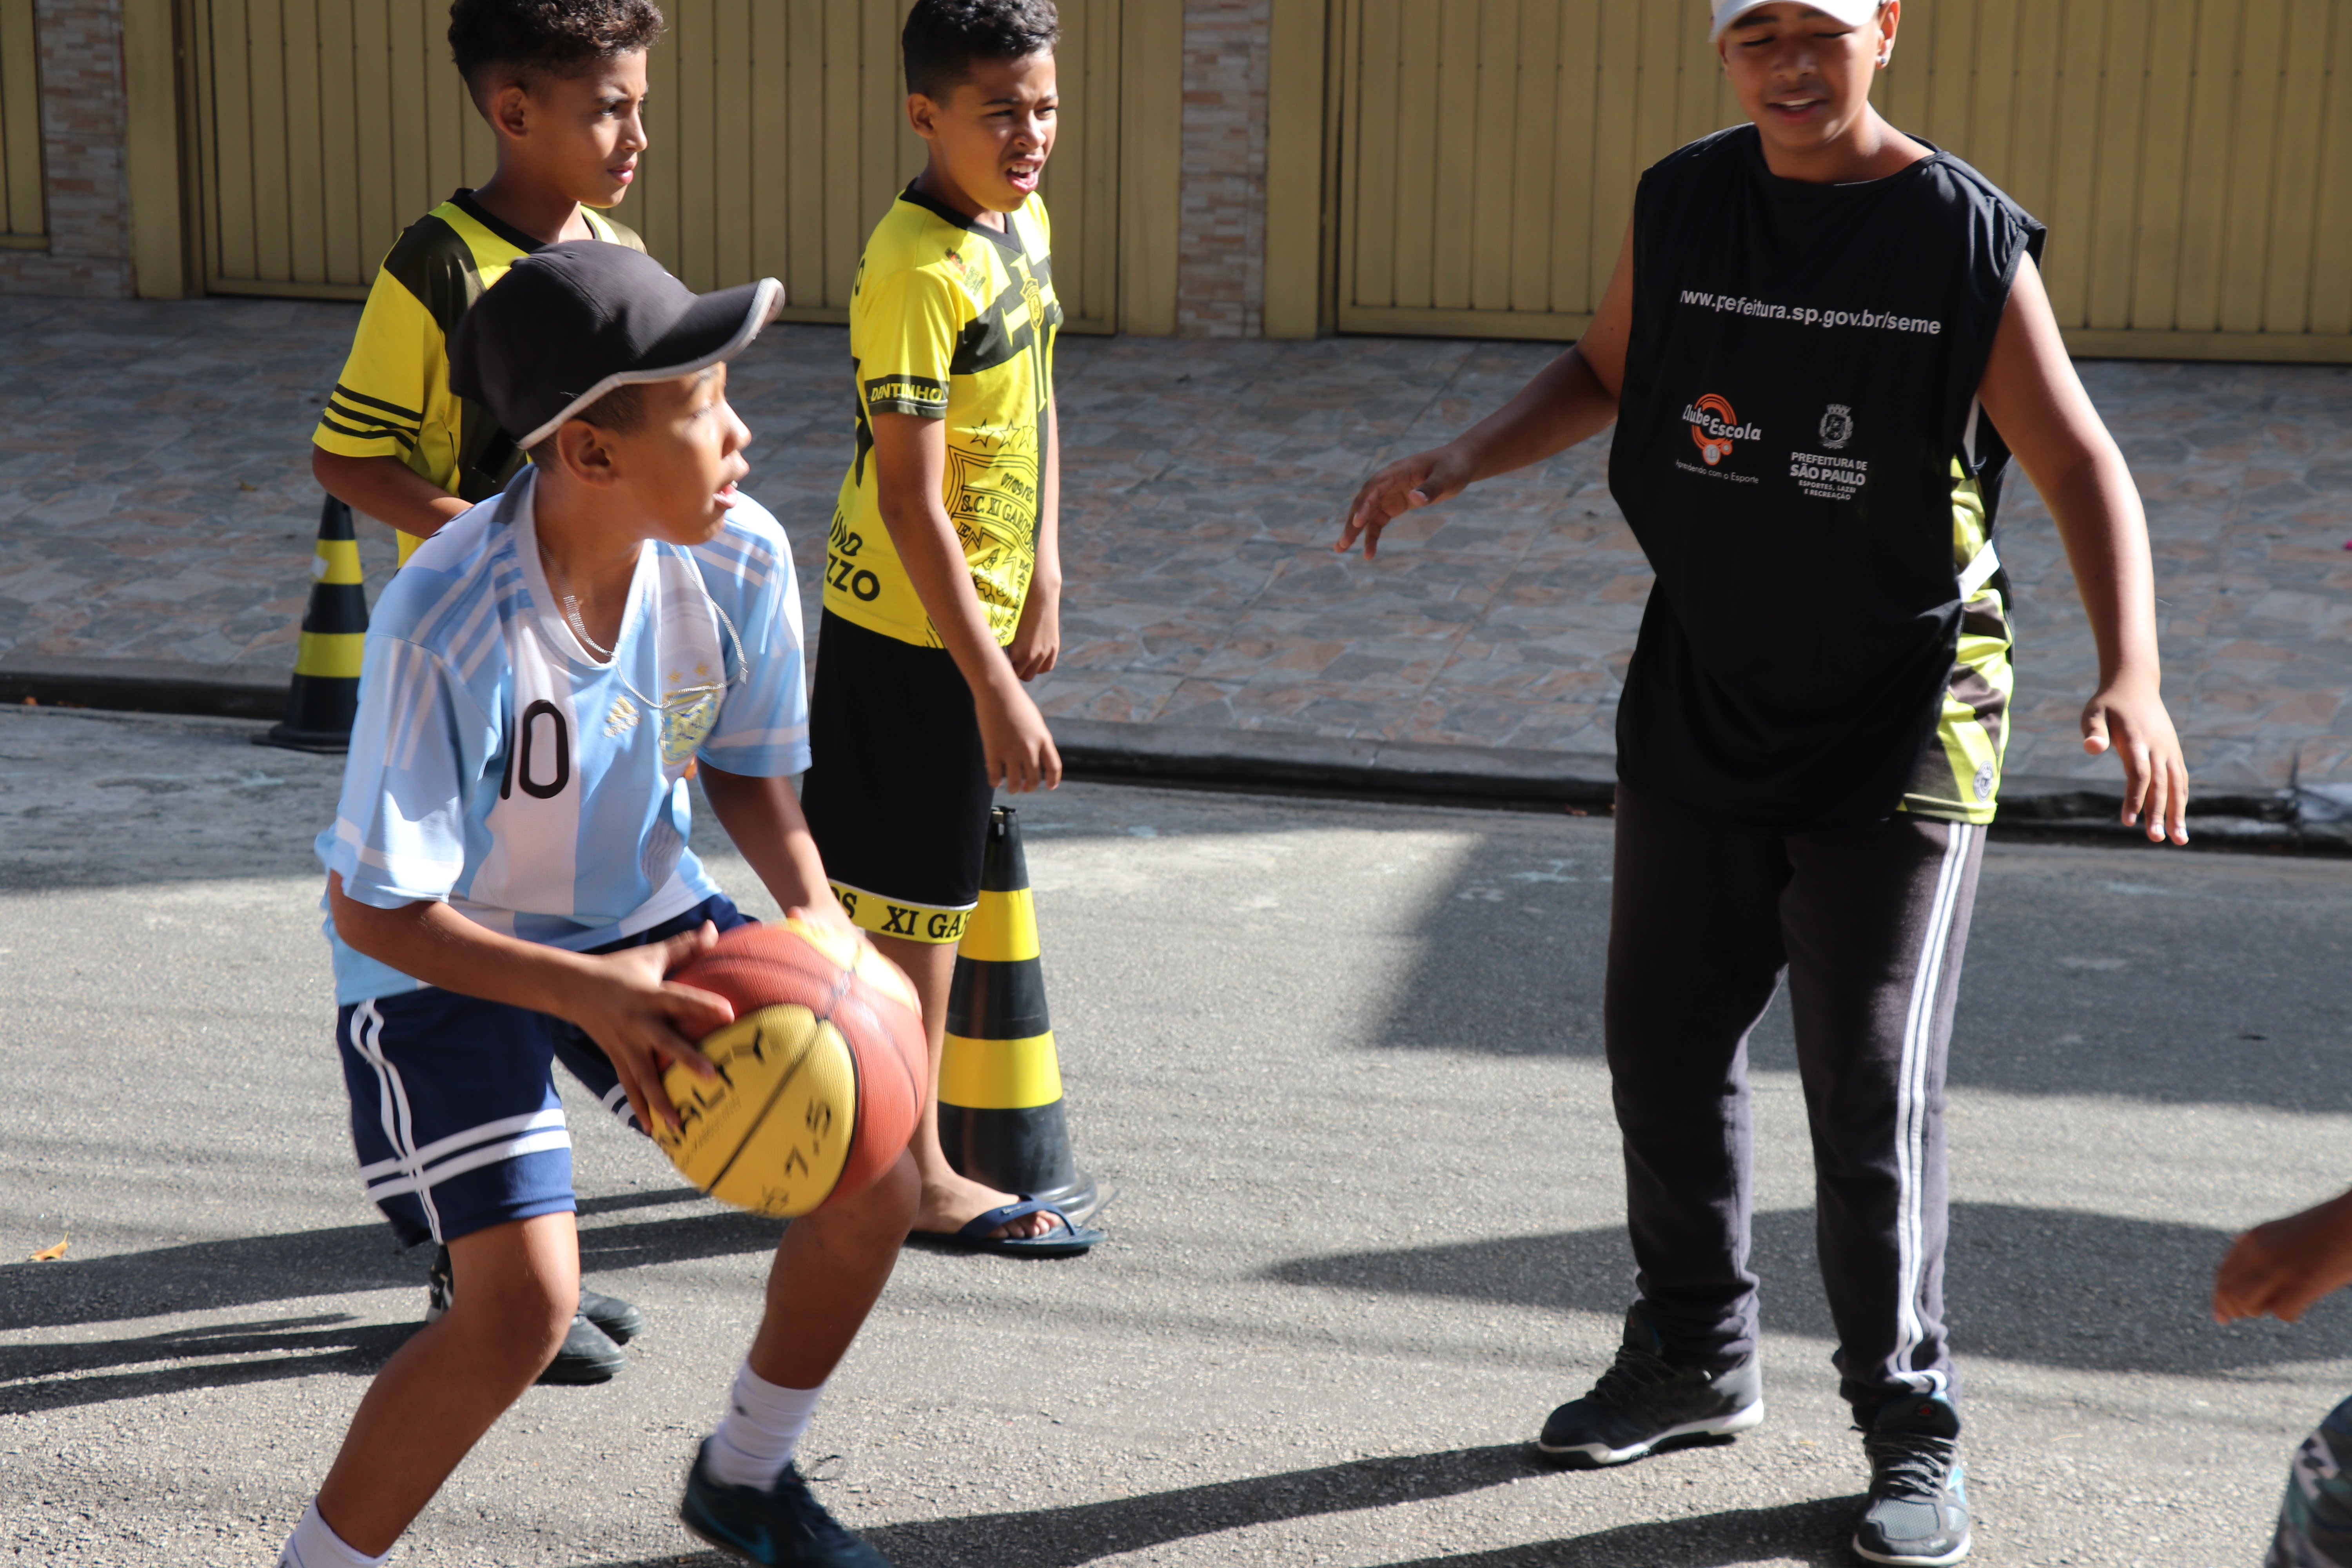 Crianças jogam basquete na rua. Em primeiro plano há um garoto com a bola na mão.